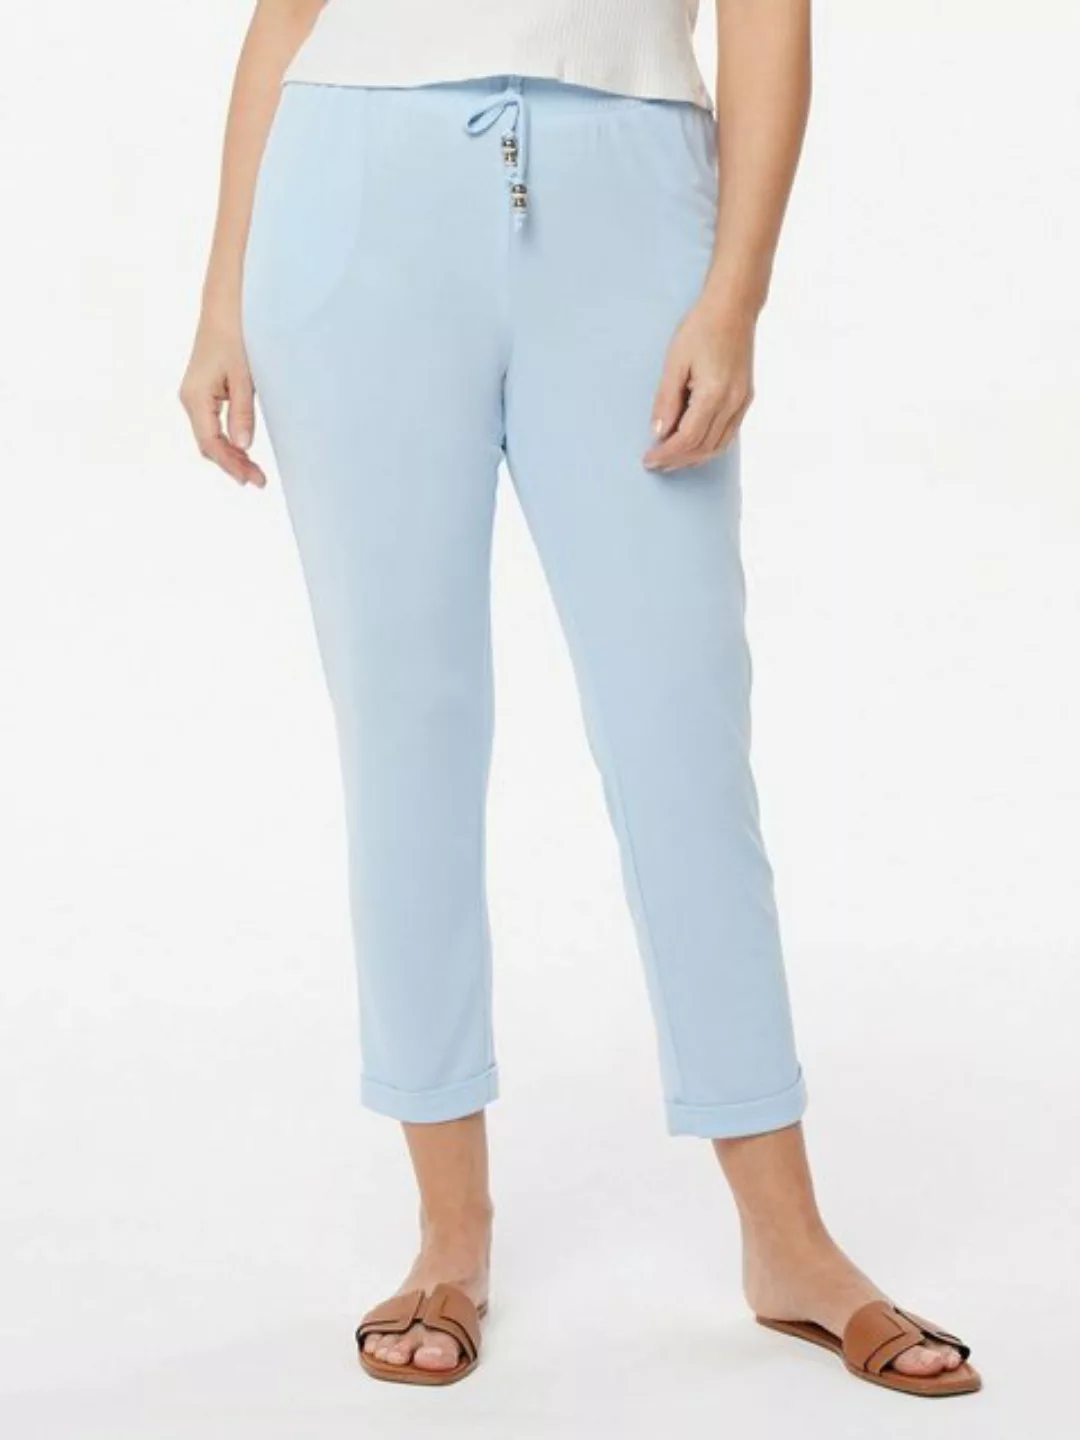 MONACO blue Jerseyhose Jog Pants figurumspielend mit gefaltetem Saum günstig online kaufen